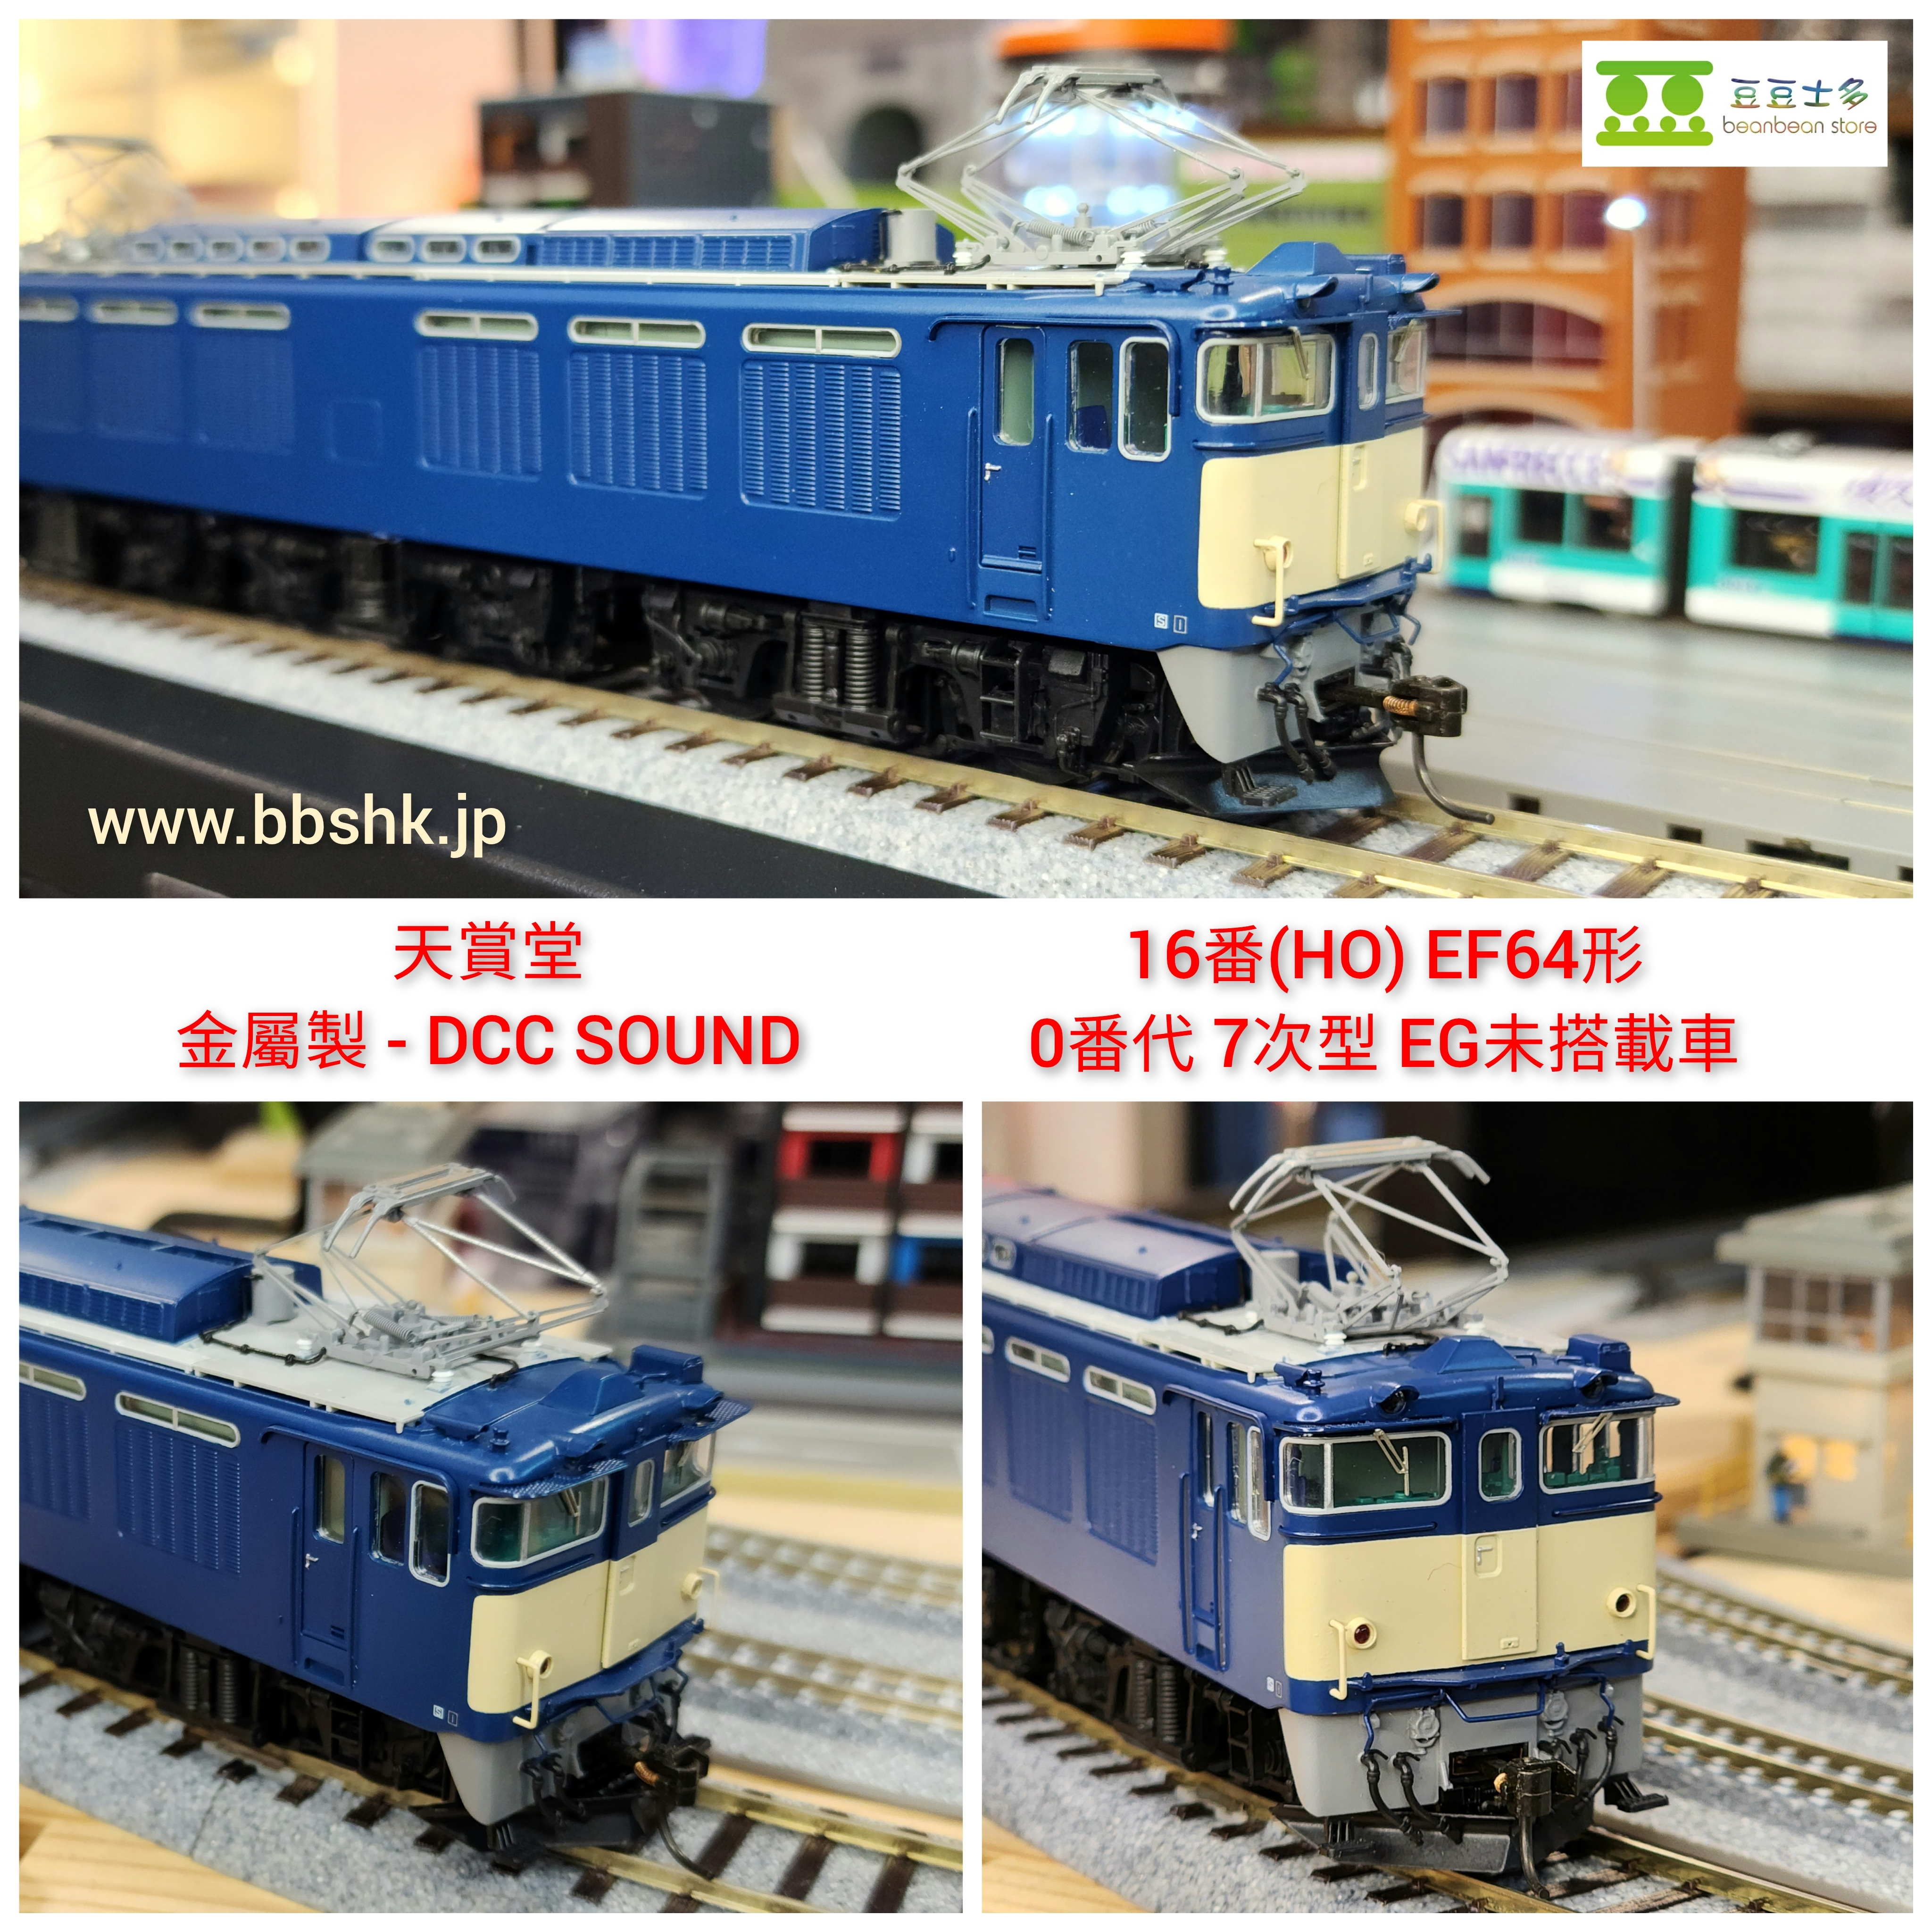 天賞堂72014 (HO) 1/80 EF64形電気機関車0番代7次型EG未搭載車(56～75号機)